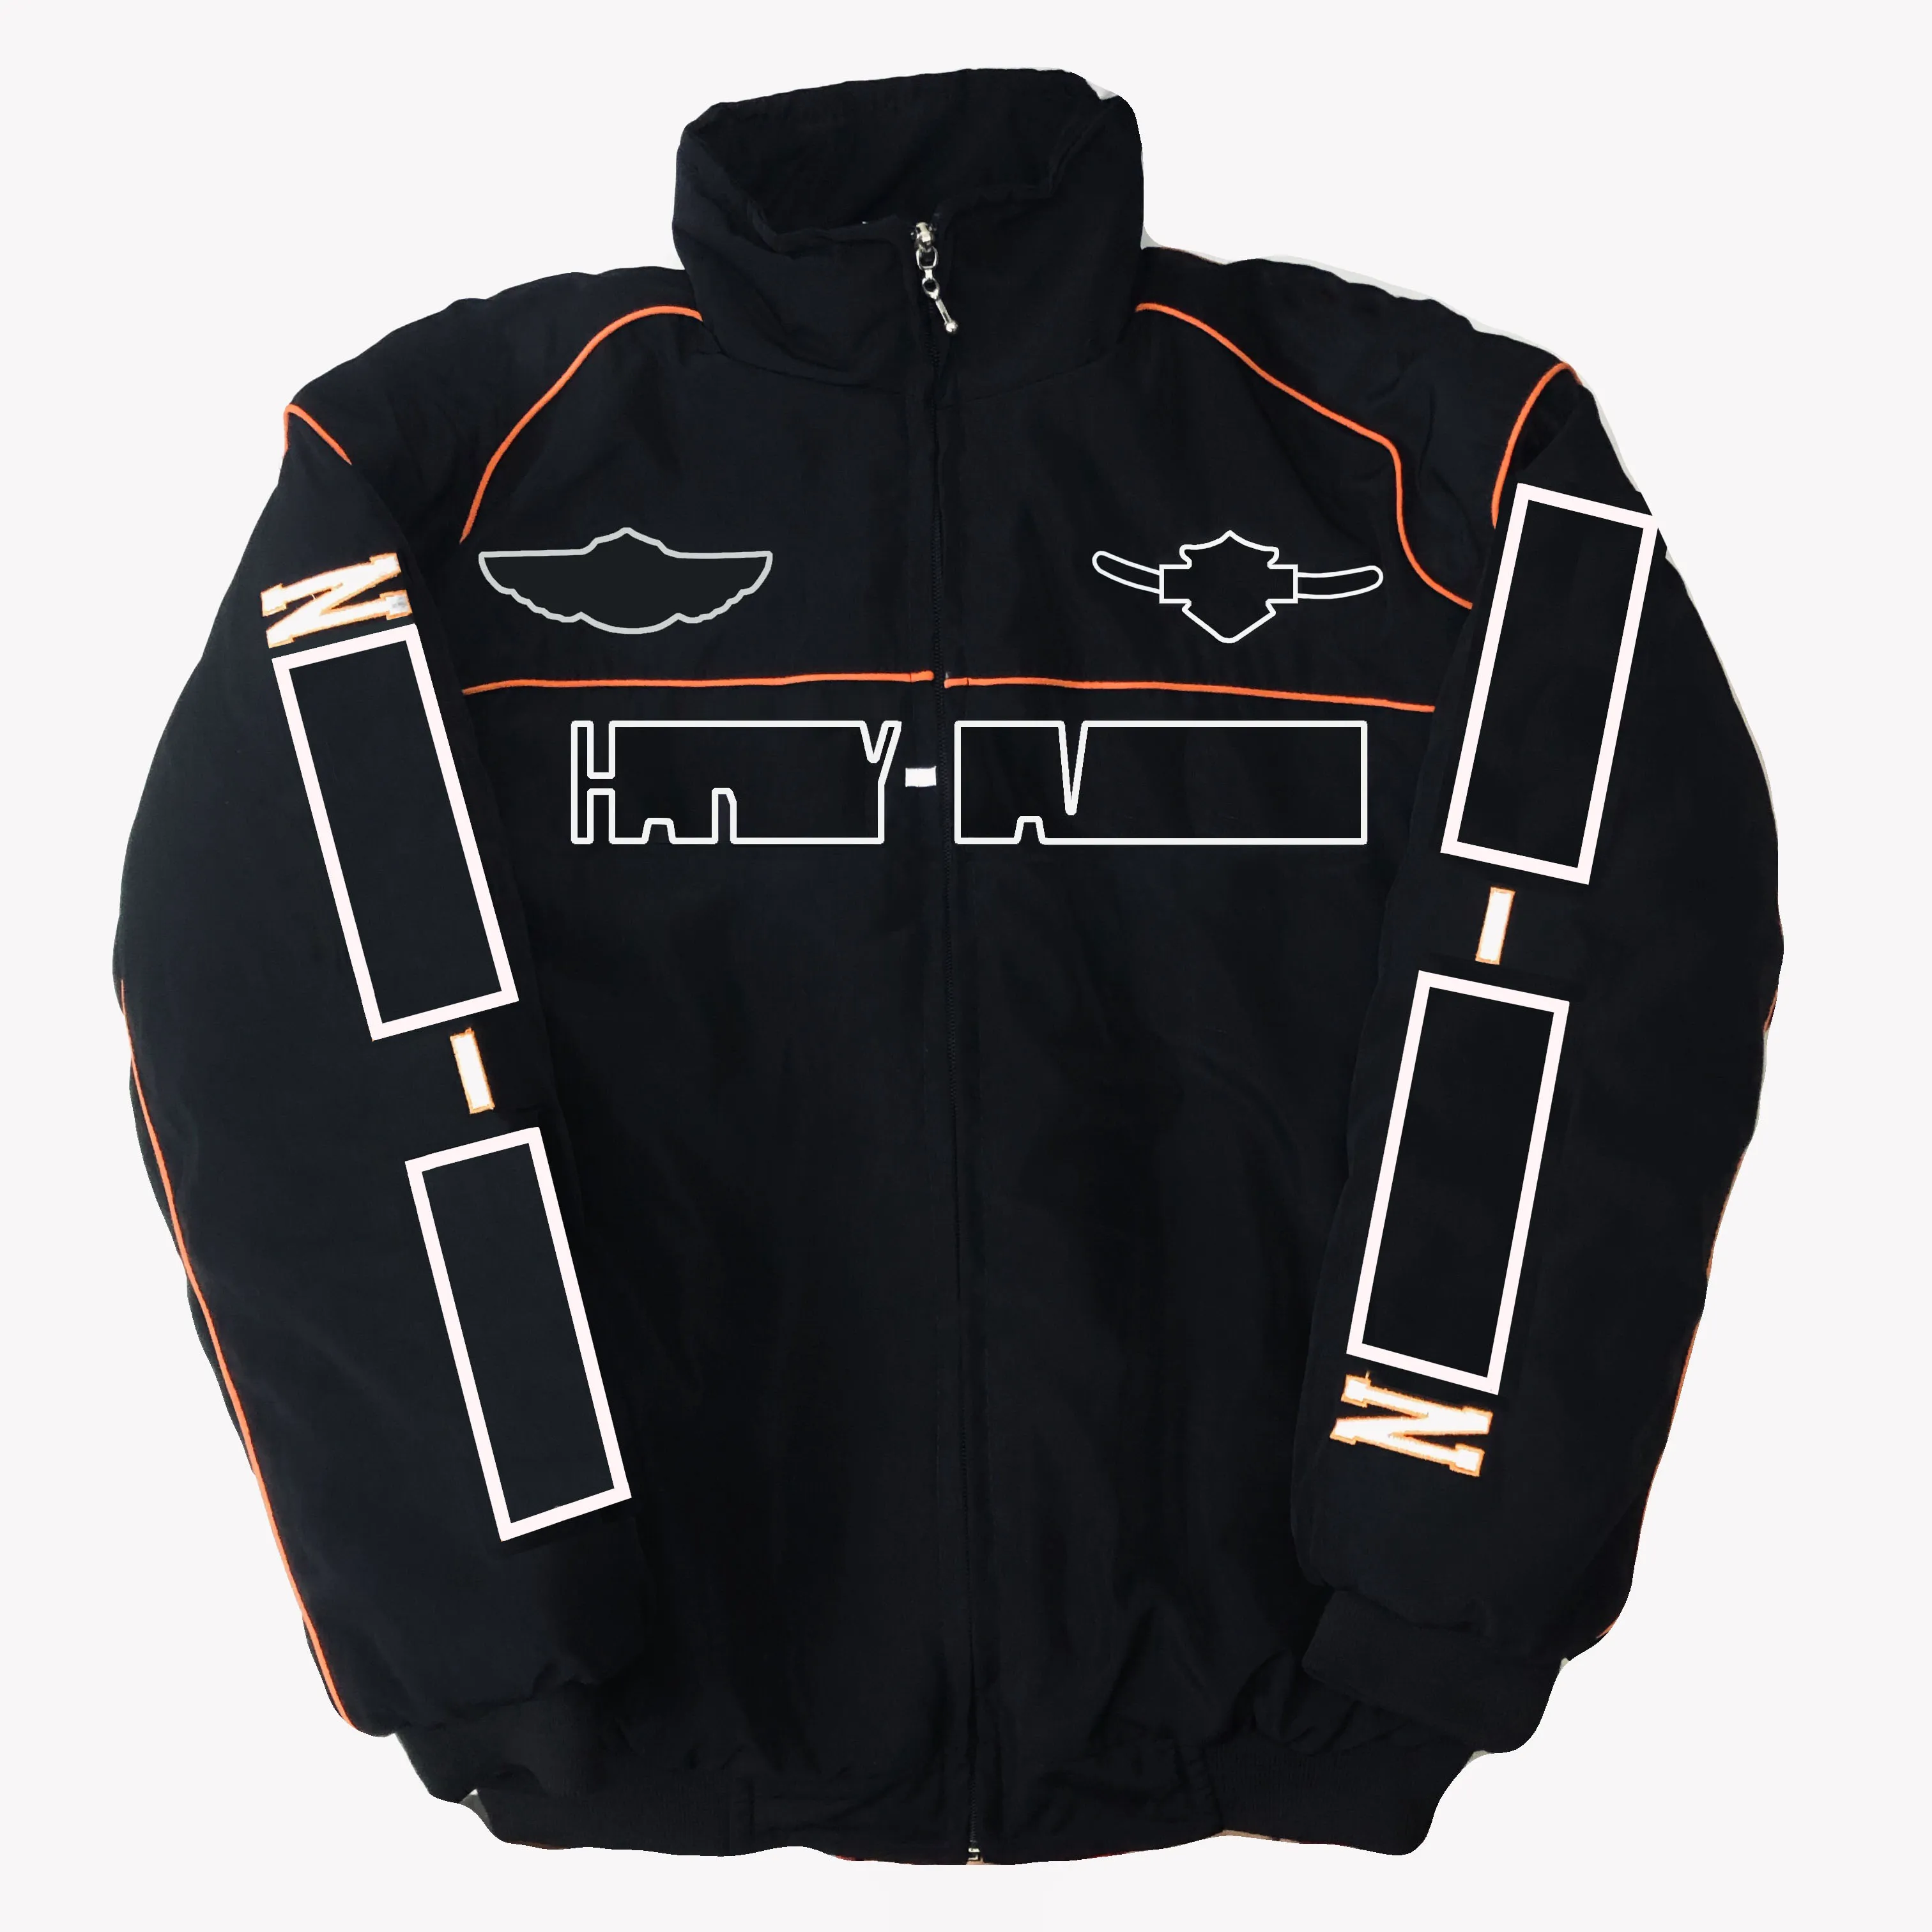 F1レーシングスーツレトロスタイルジャケットコットンカジュアルウィンターコットンジャケットA052 A050新しい冬風プルーフサイクリング衣料品259J